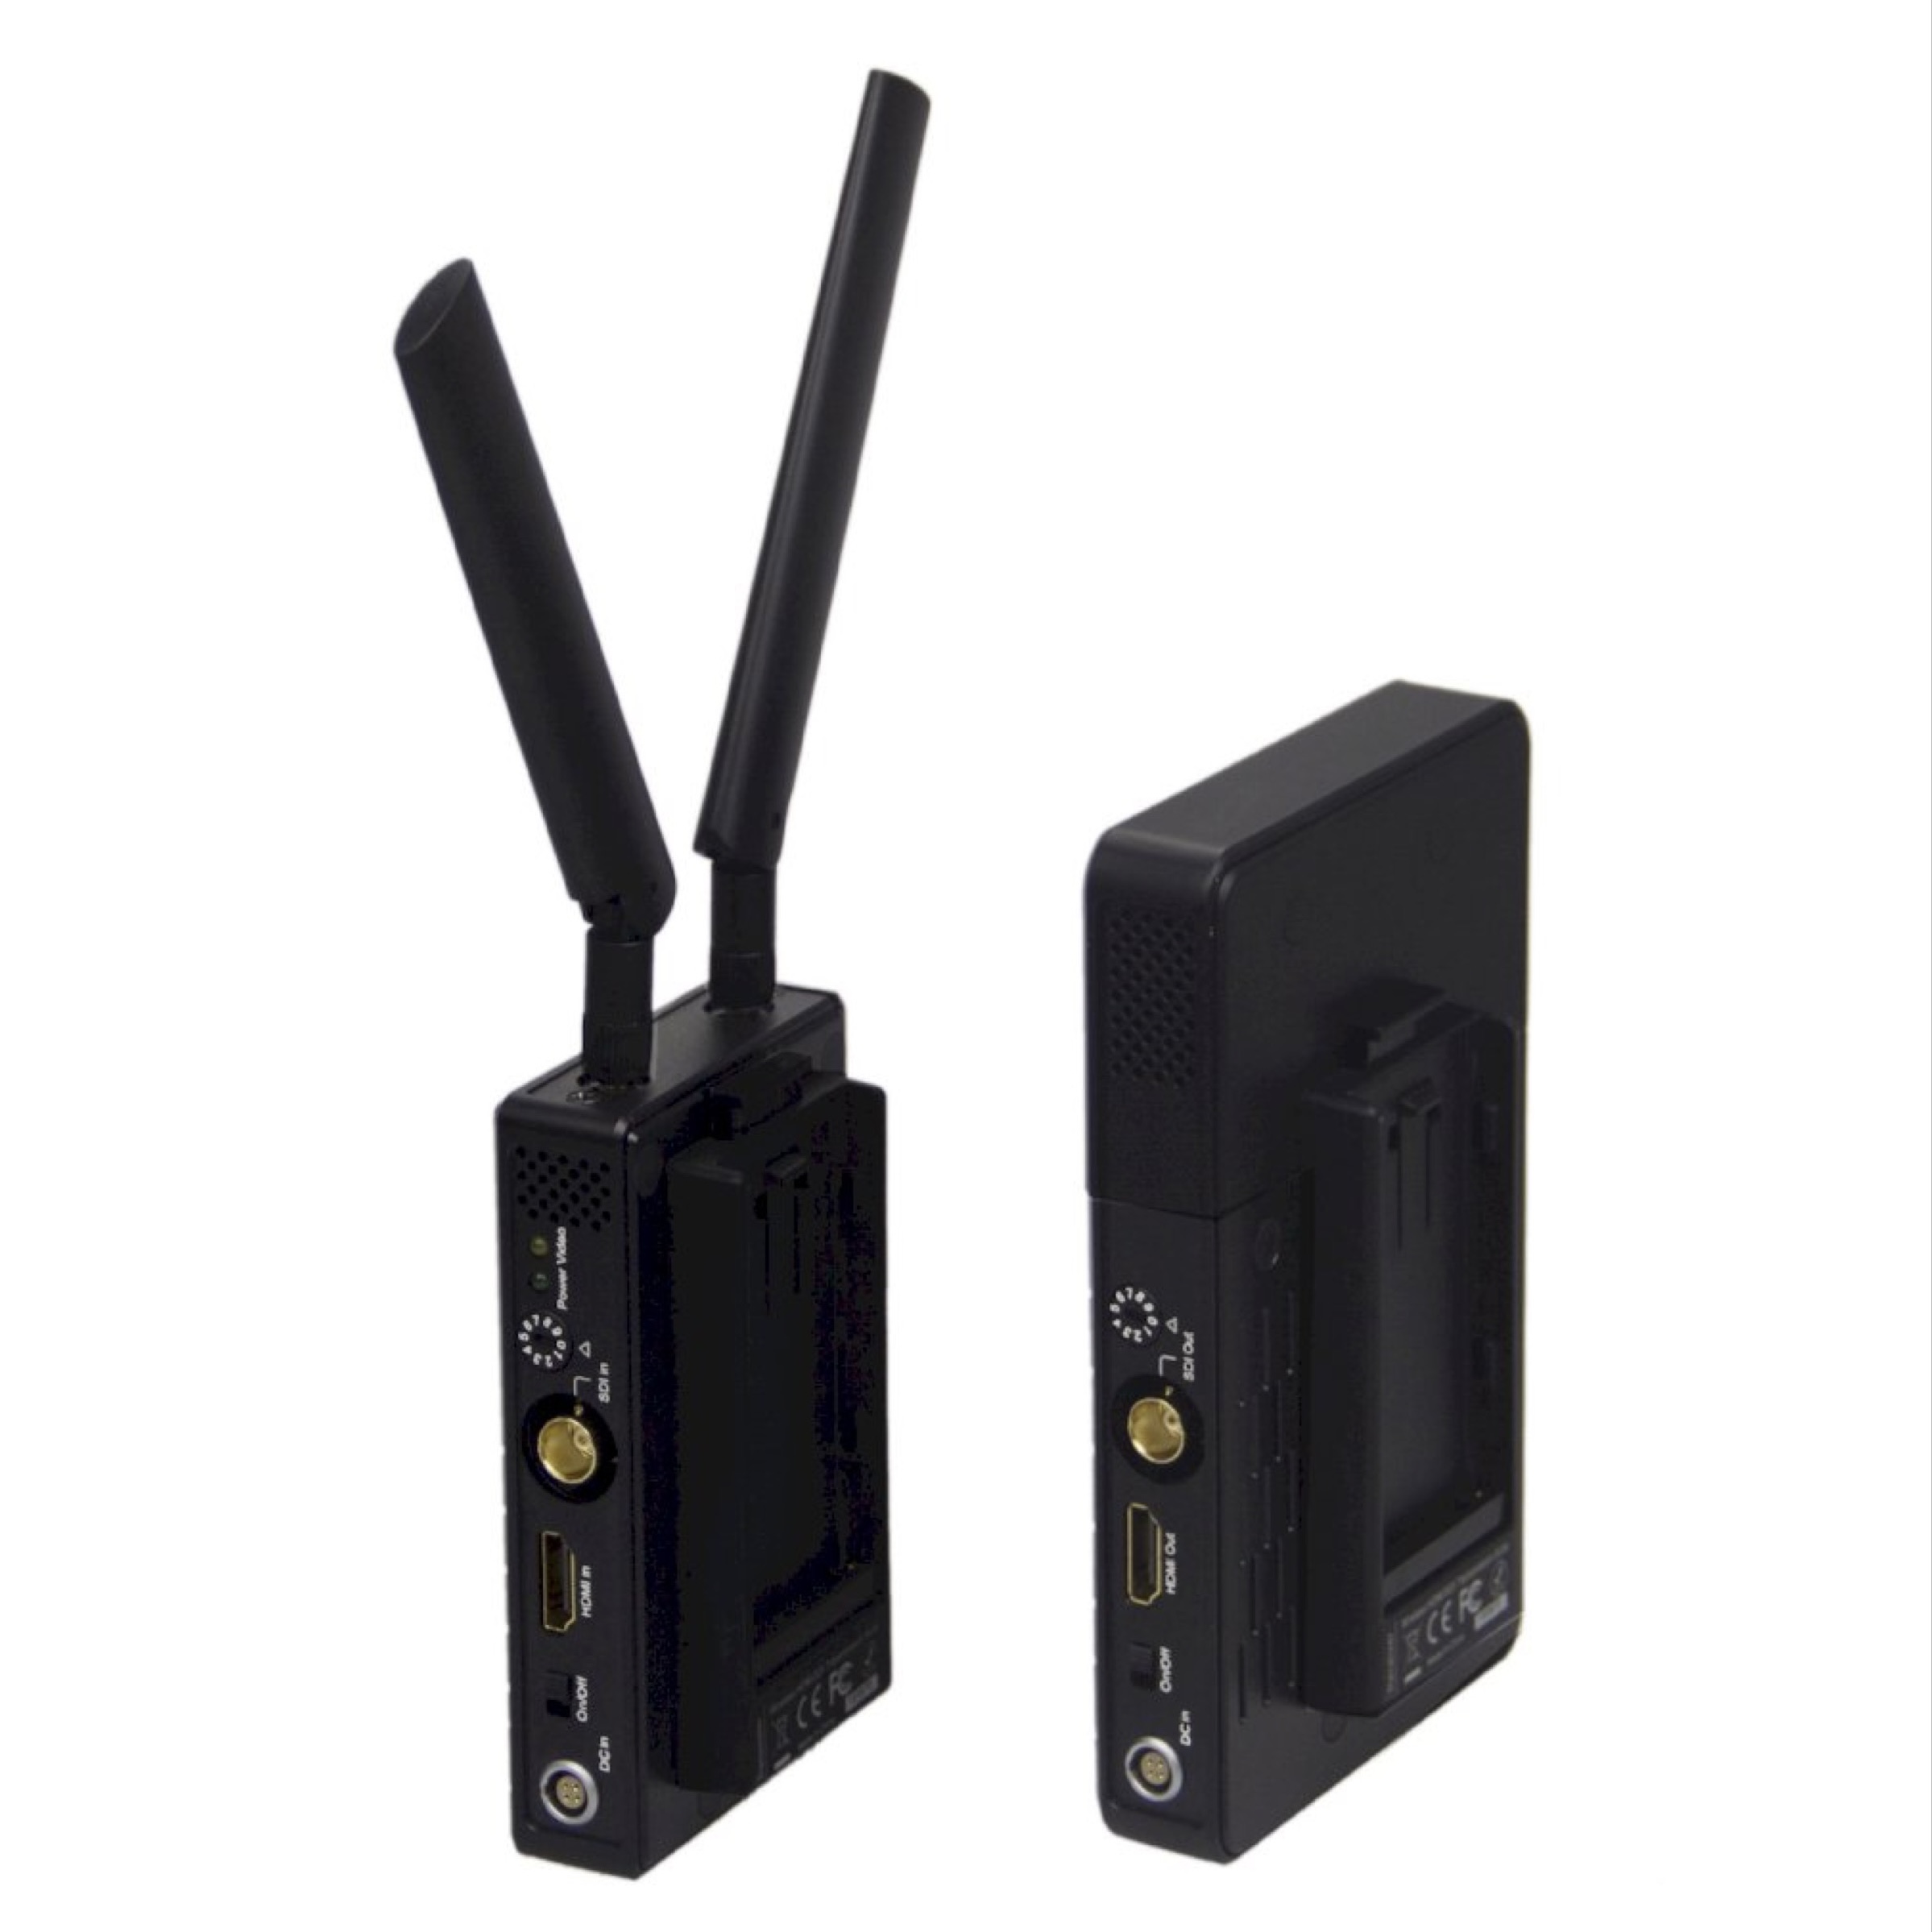 AirAV “Mini” wireless video link – 1 TX & 1 RX - Picture Hire Australia